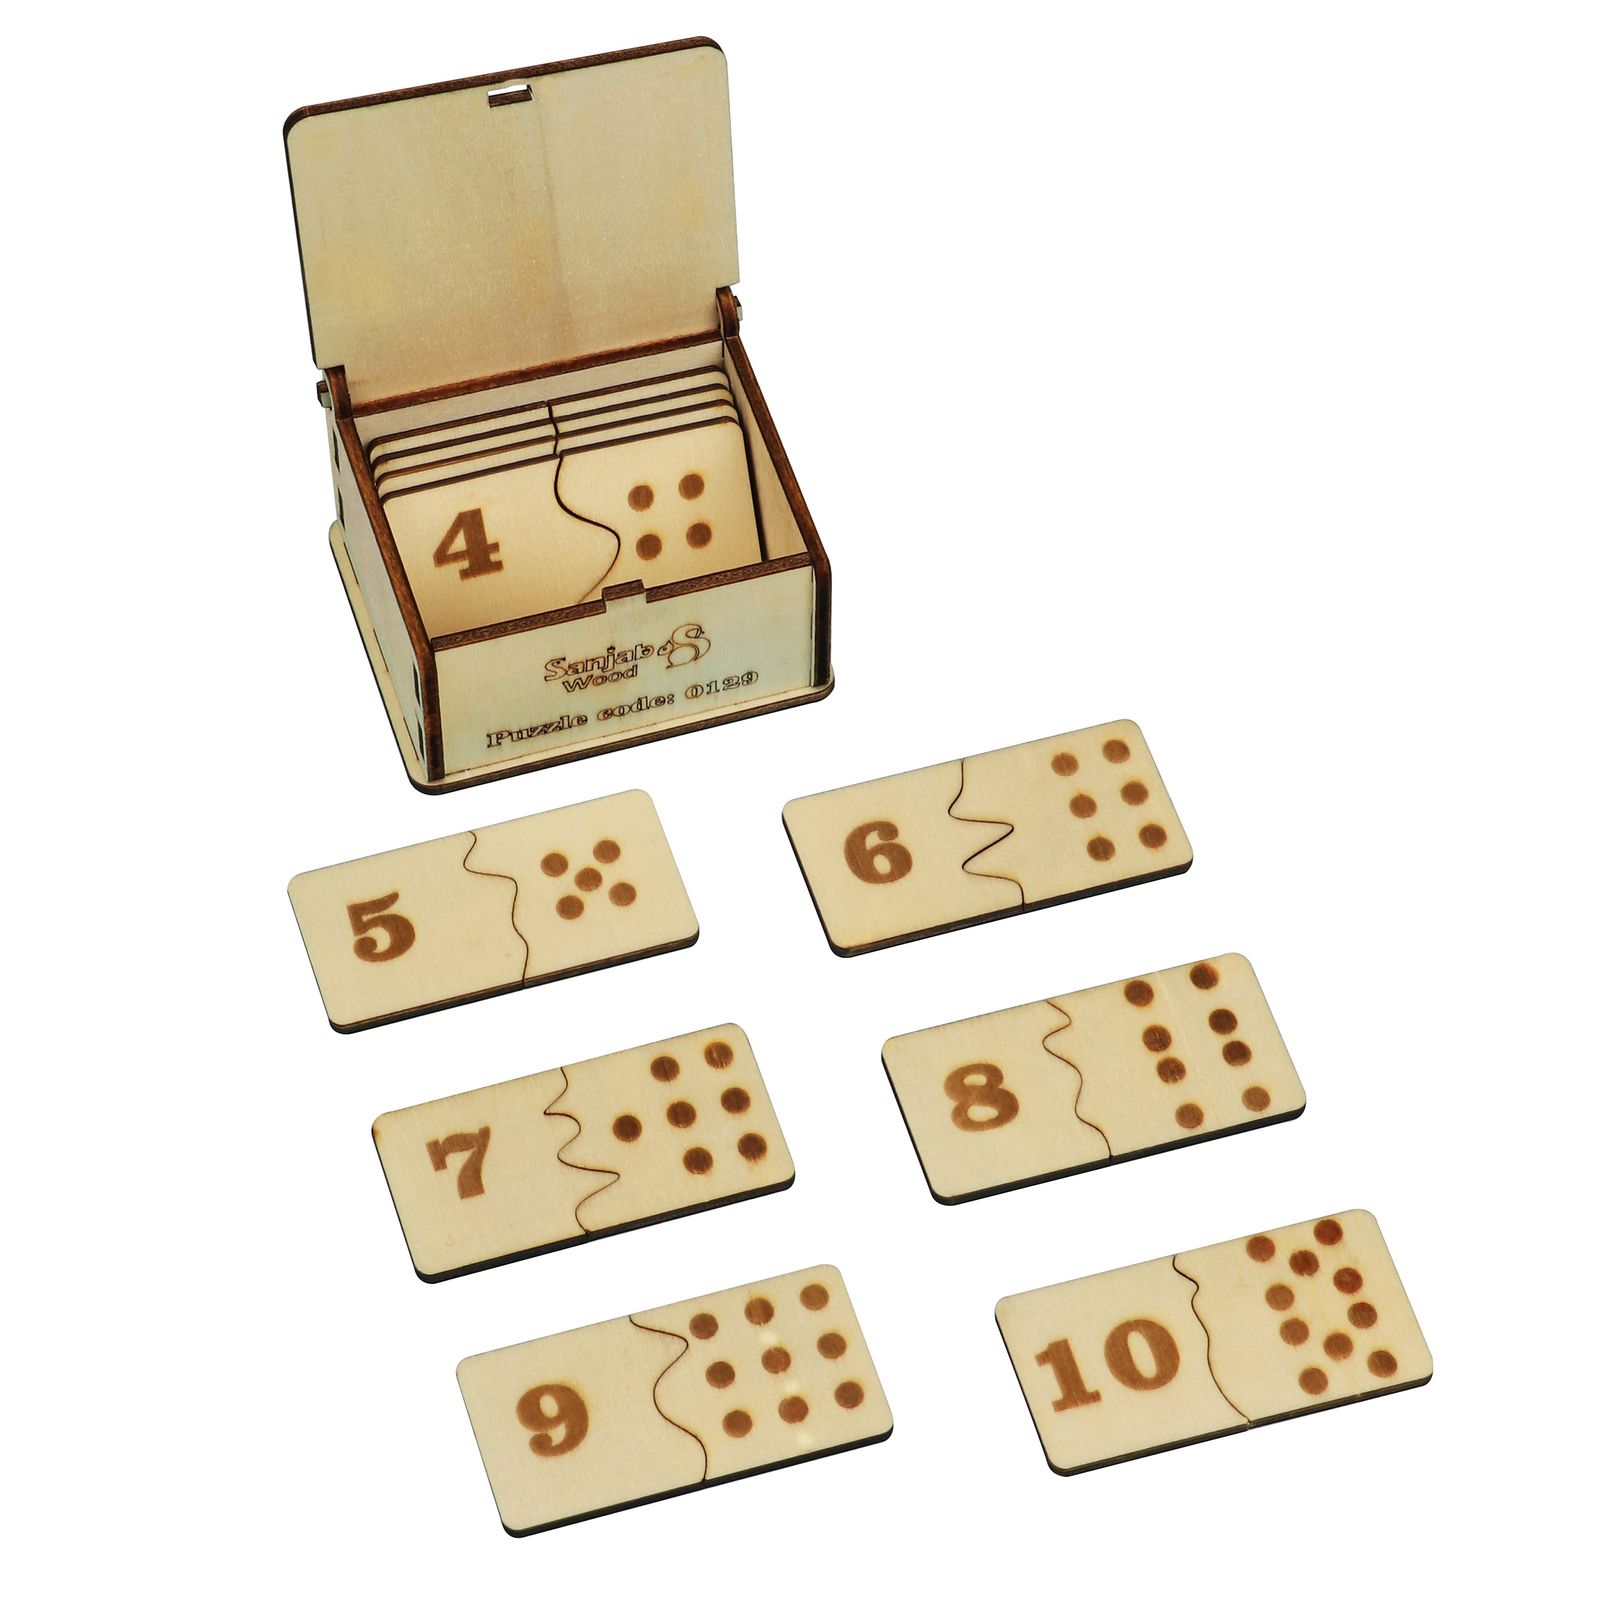 بازی آموزشی اعداد سنجاب وود مدل Dominoes number Puzzle -  - 1